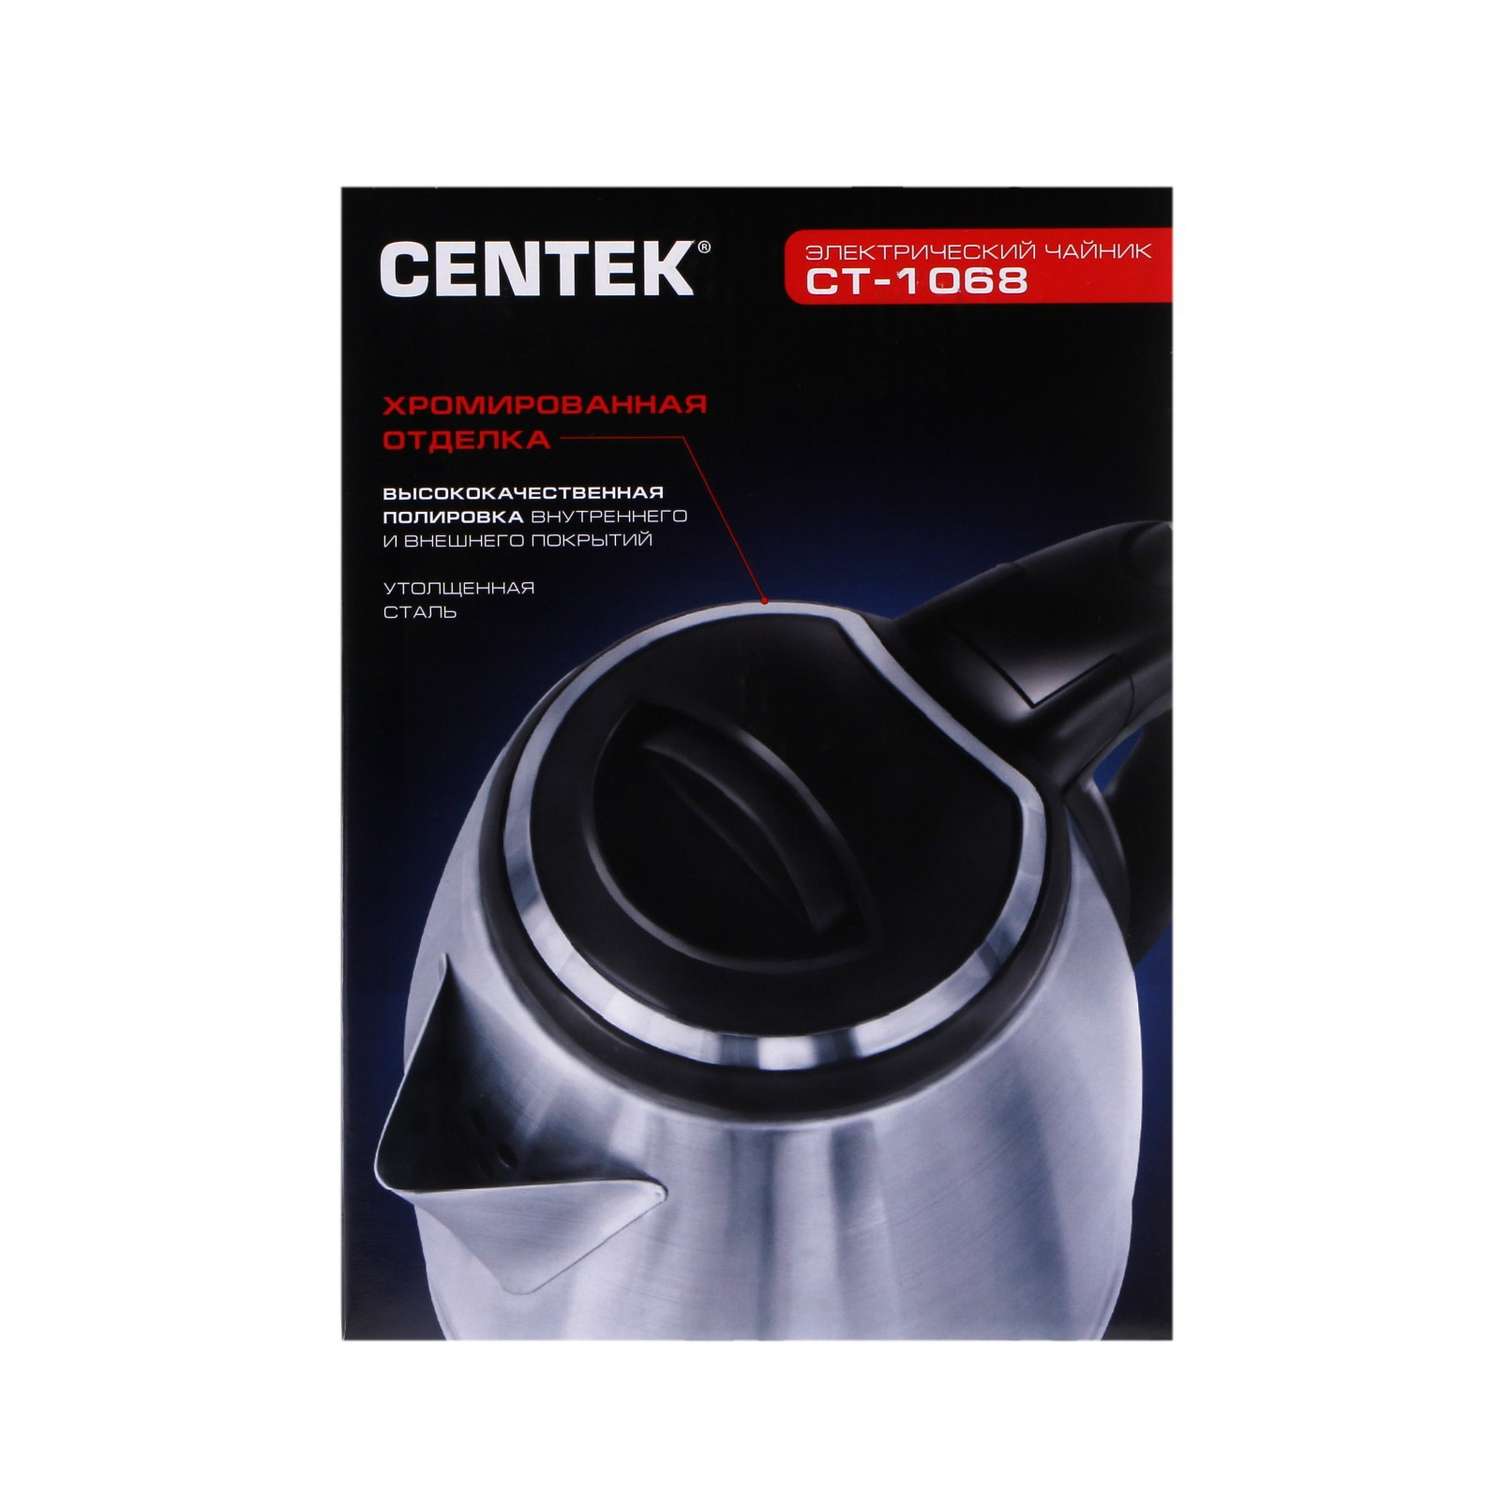 Чайник CENTEK электрический CT-1068 металл 2 л 2000 Вт серебристый - фото 9